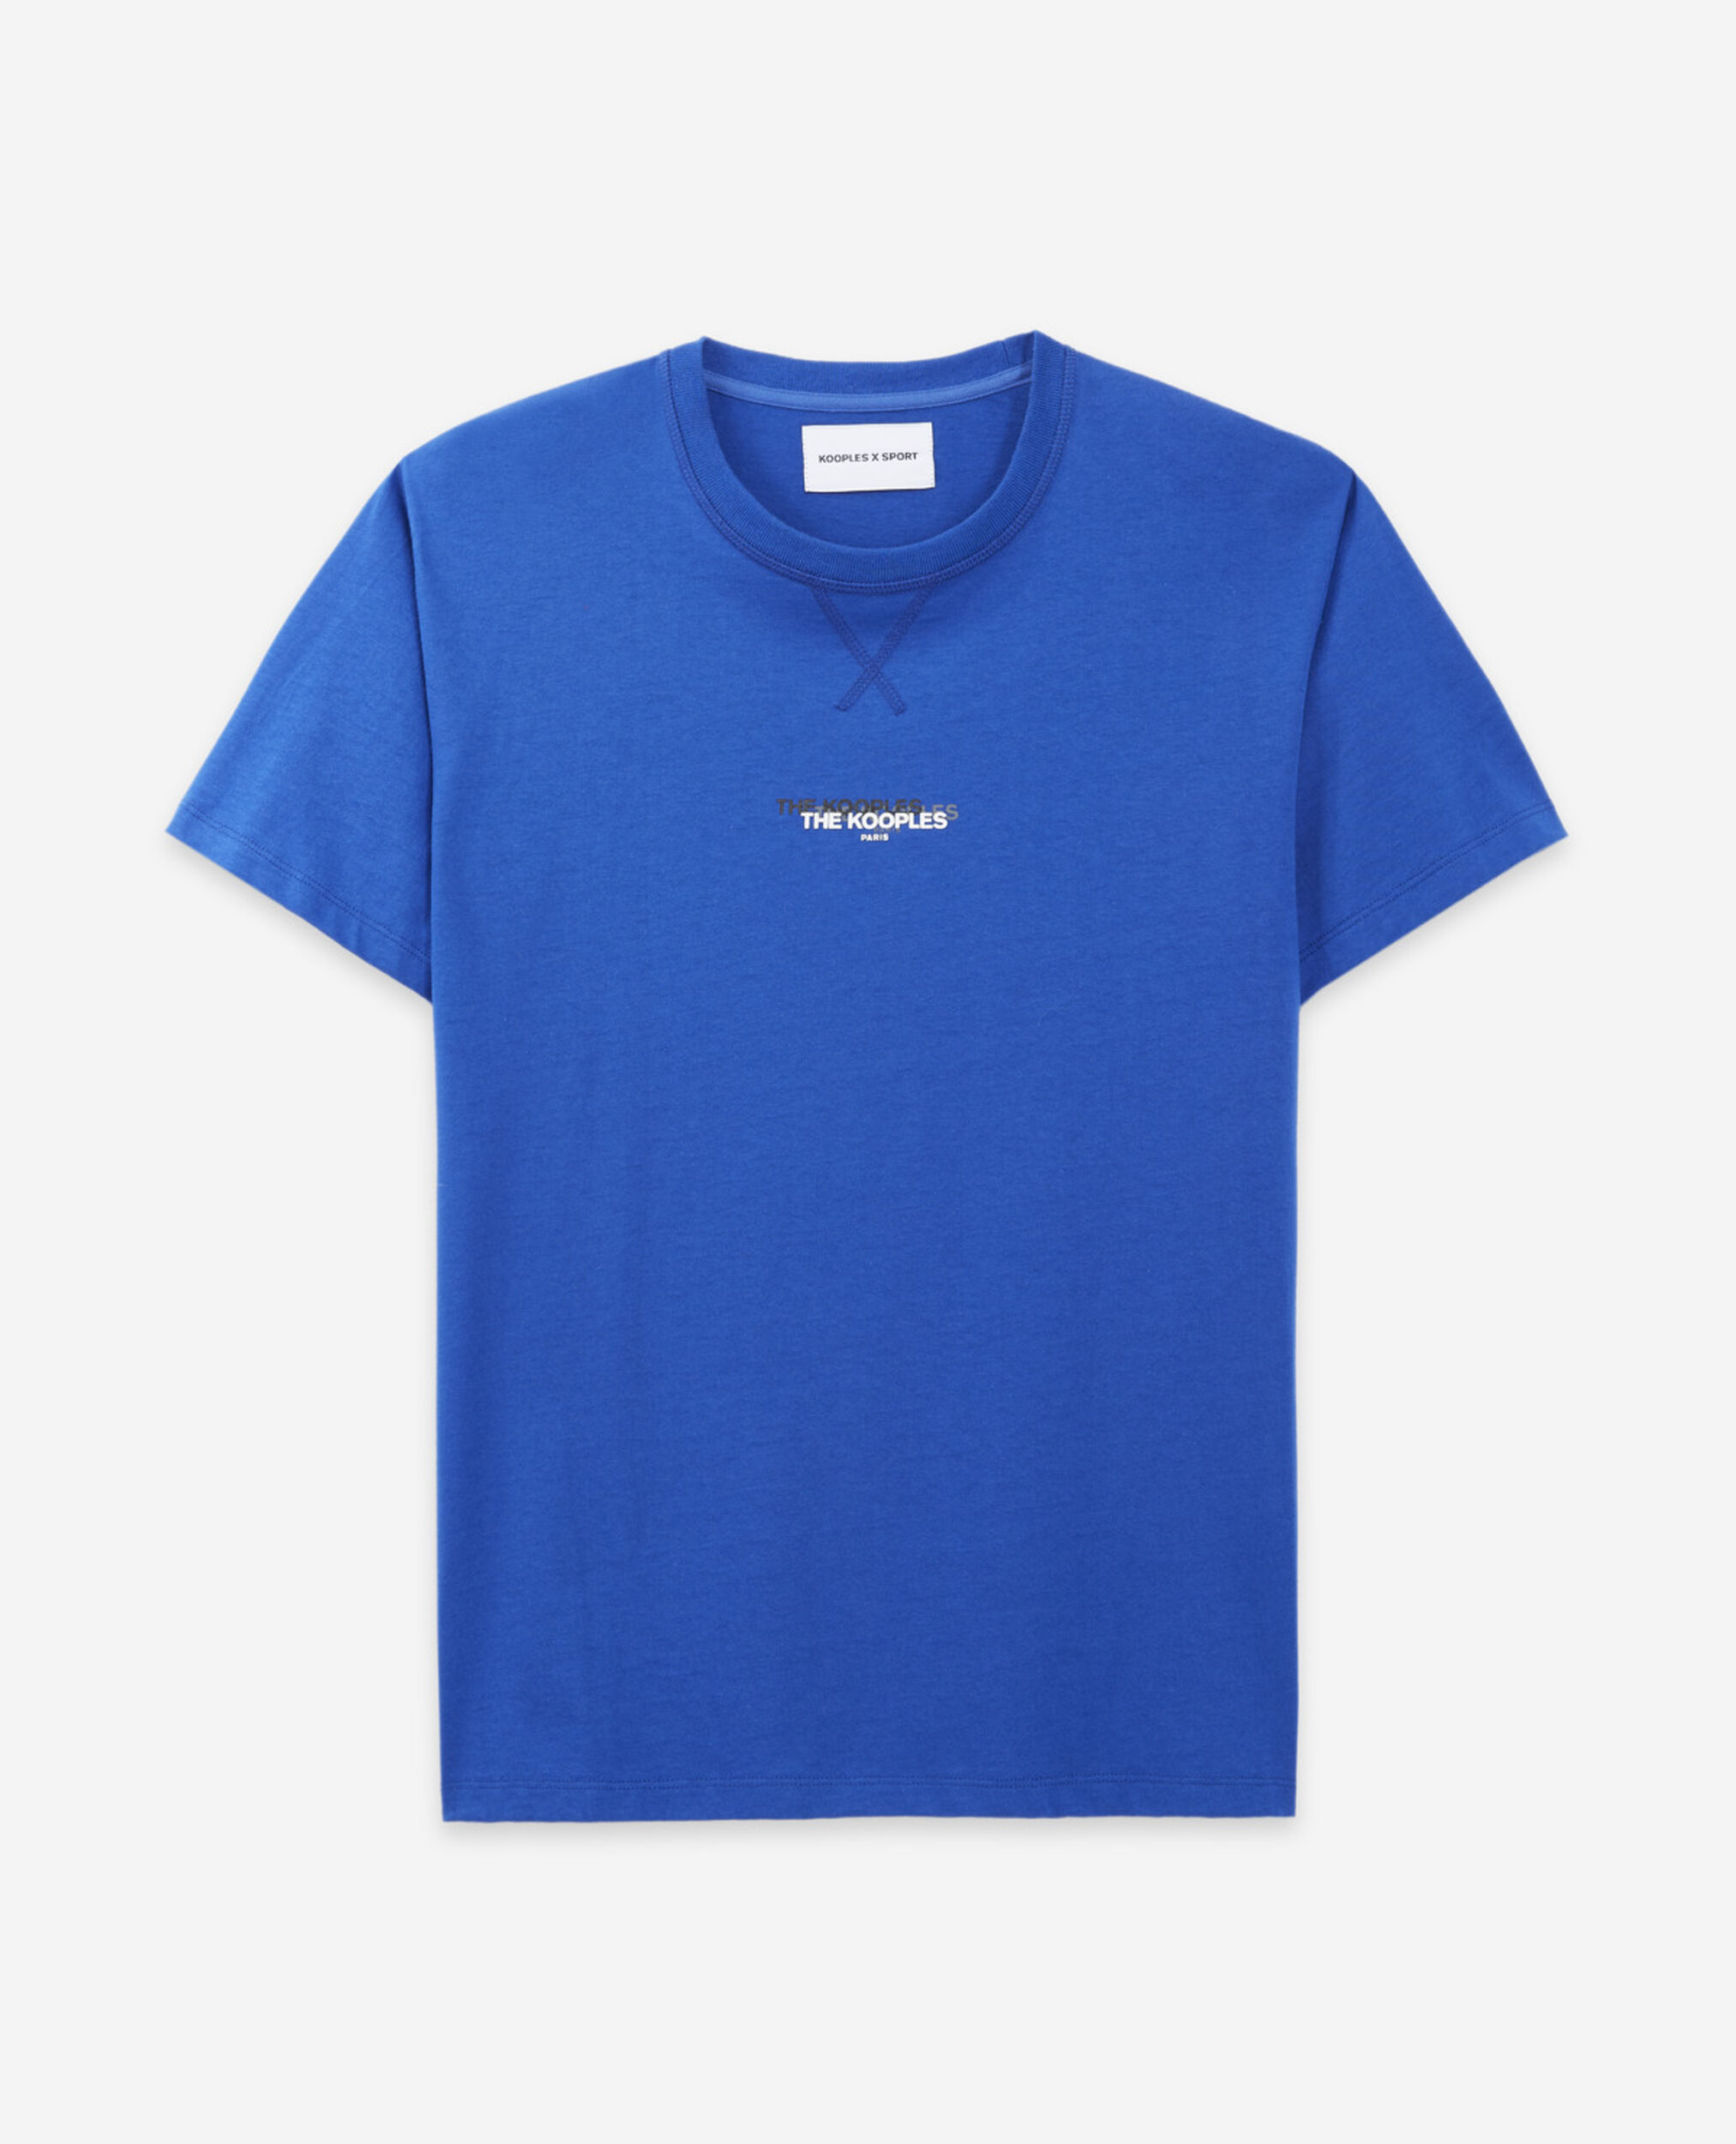 T-shirt bleu coton triple logo contrasté, BLUE, hi-res image number null